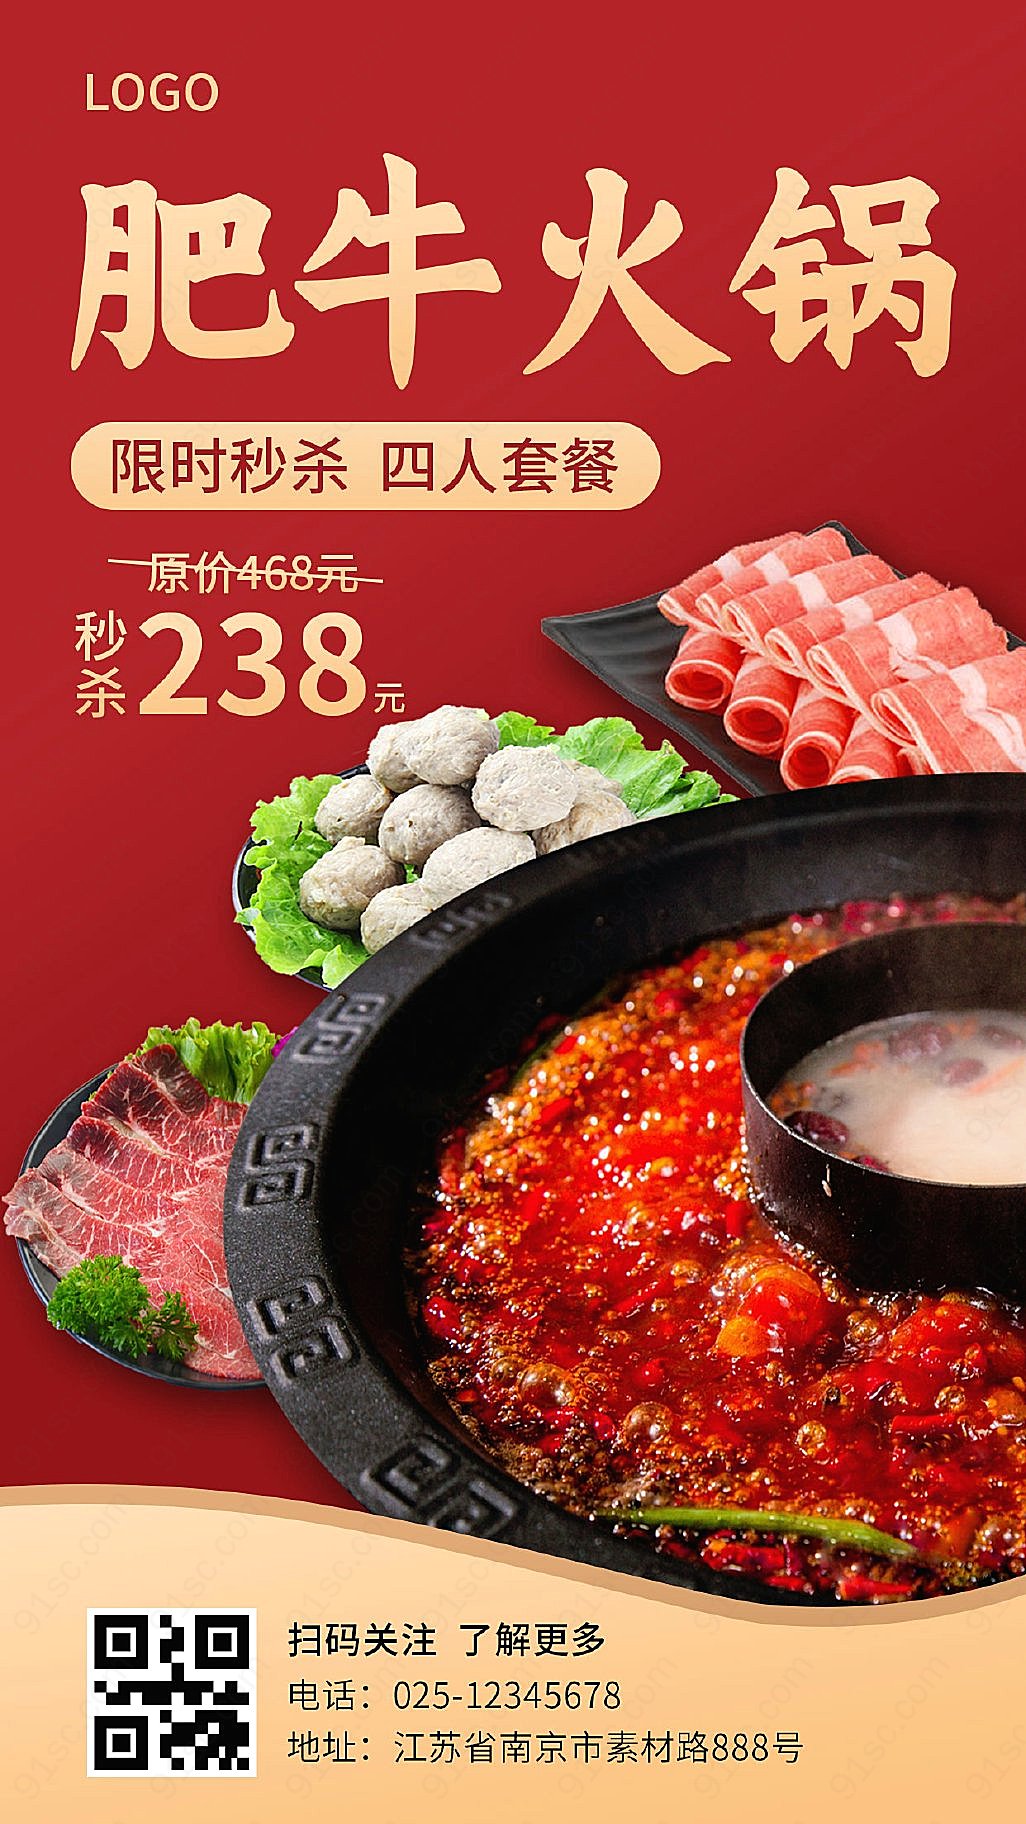 红色主题肥牛火锅——餐饮美食海报新媒体用图下载